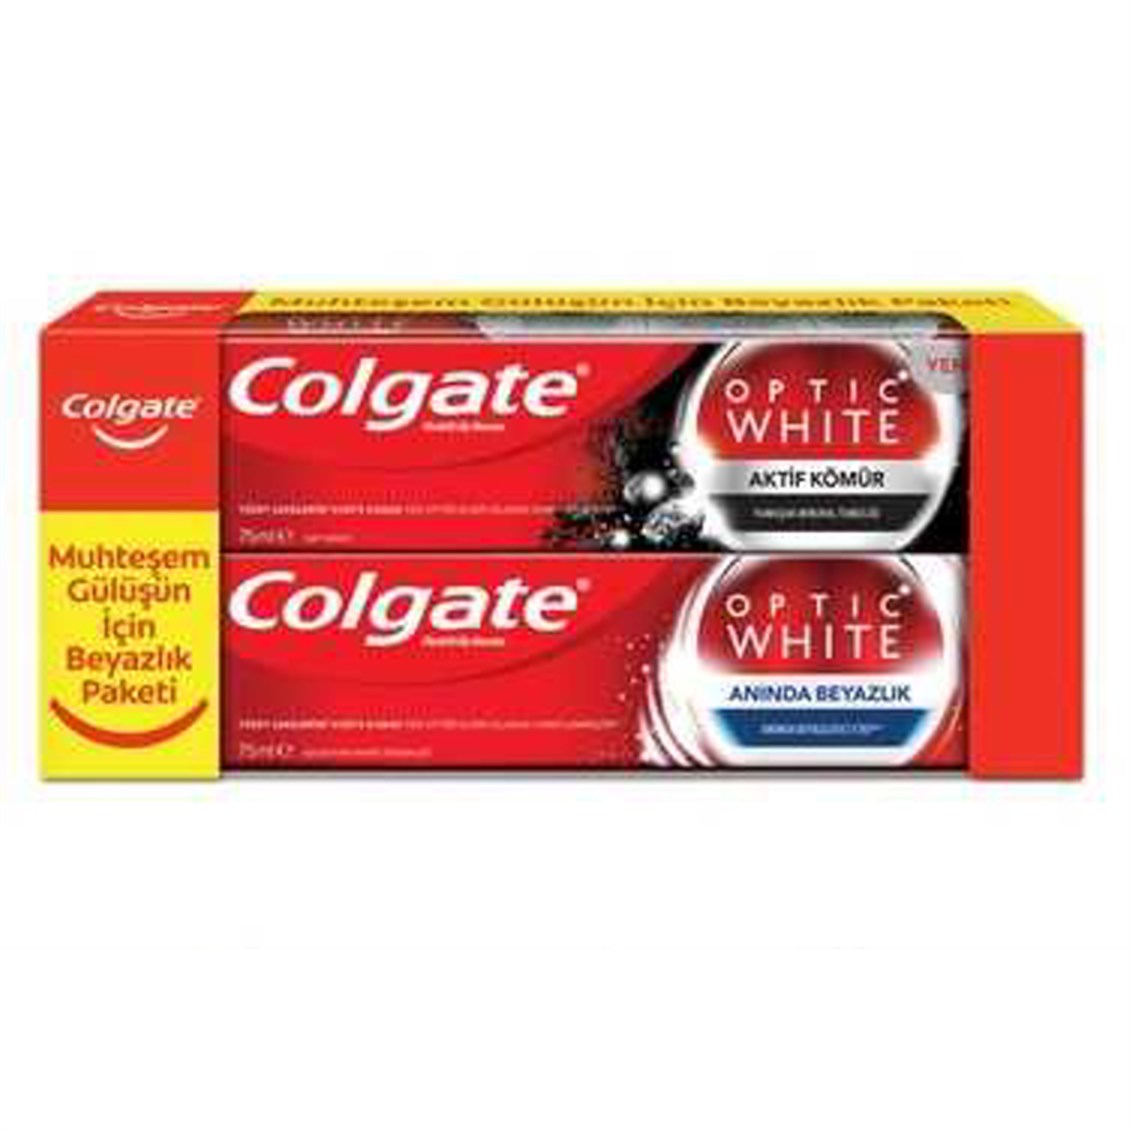 Colgate Optik White Aktif Kömür 50 ml & Optik White Anında Beyazlık 75 ml  Diş Macunu - Onur Market